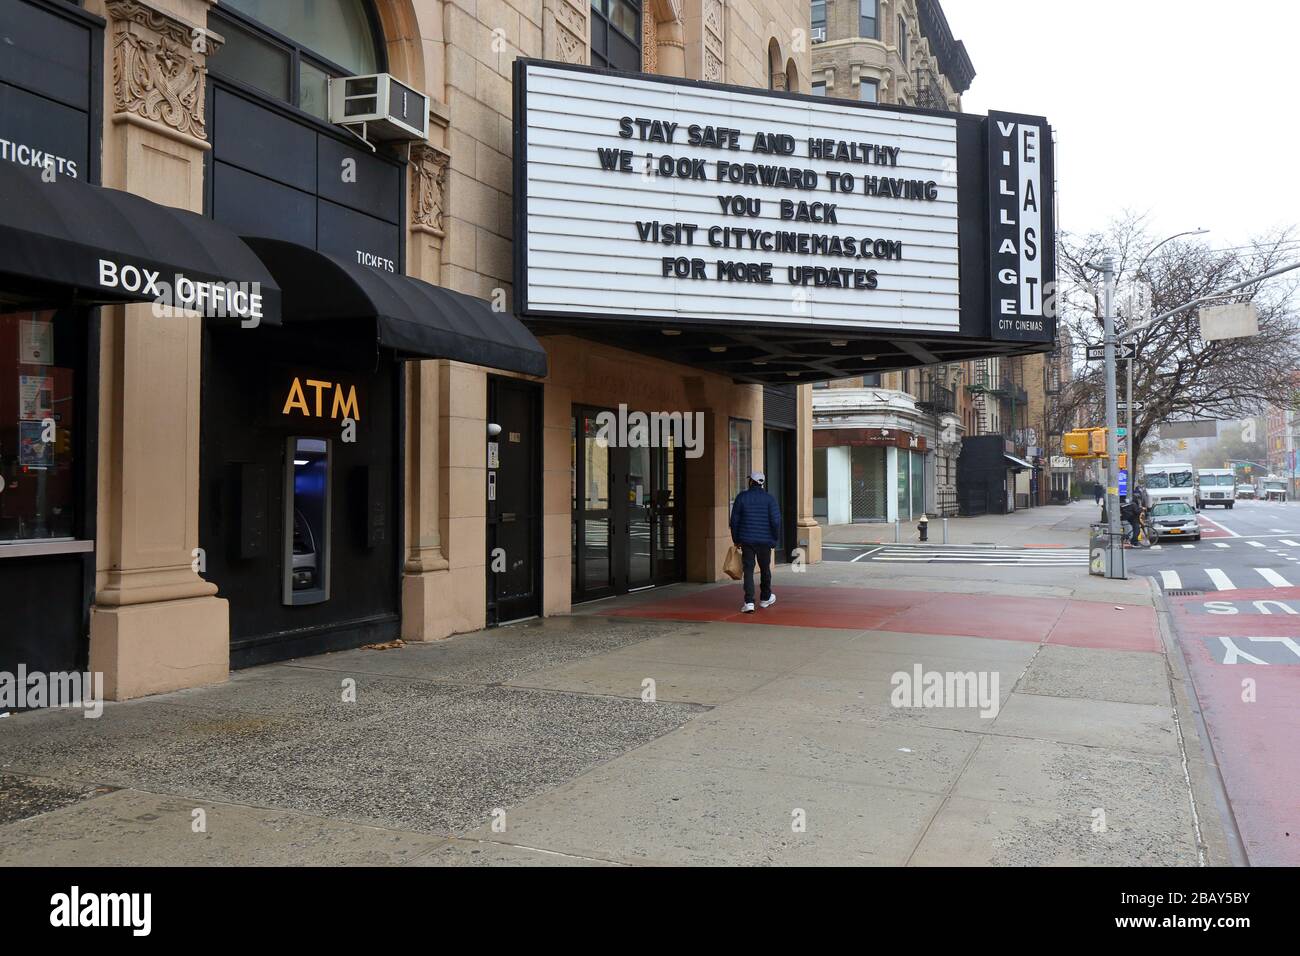 New York, New York, 29. März 2020. Leere Straßen und ein geschlossenes Kino in der East Village Nachbarschaft von Manhattan mit einer "Day Safe and Healthy"-Nachricht auf seinem Festzelt während der Coronavirus COVID-19-Pandemie. Kredit: Robert K. Chin. Stockfoto